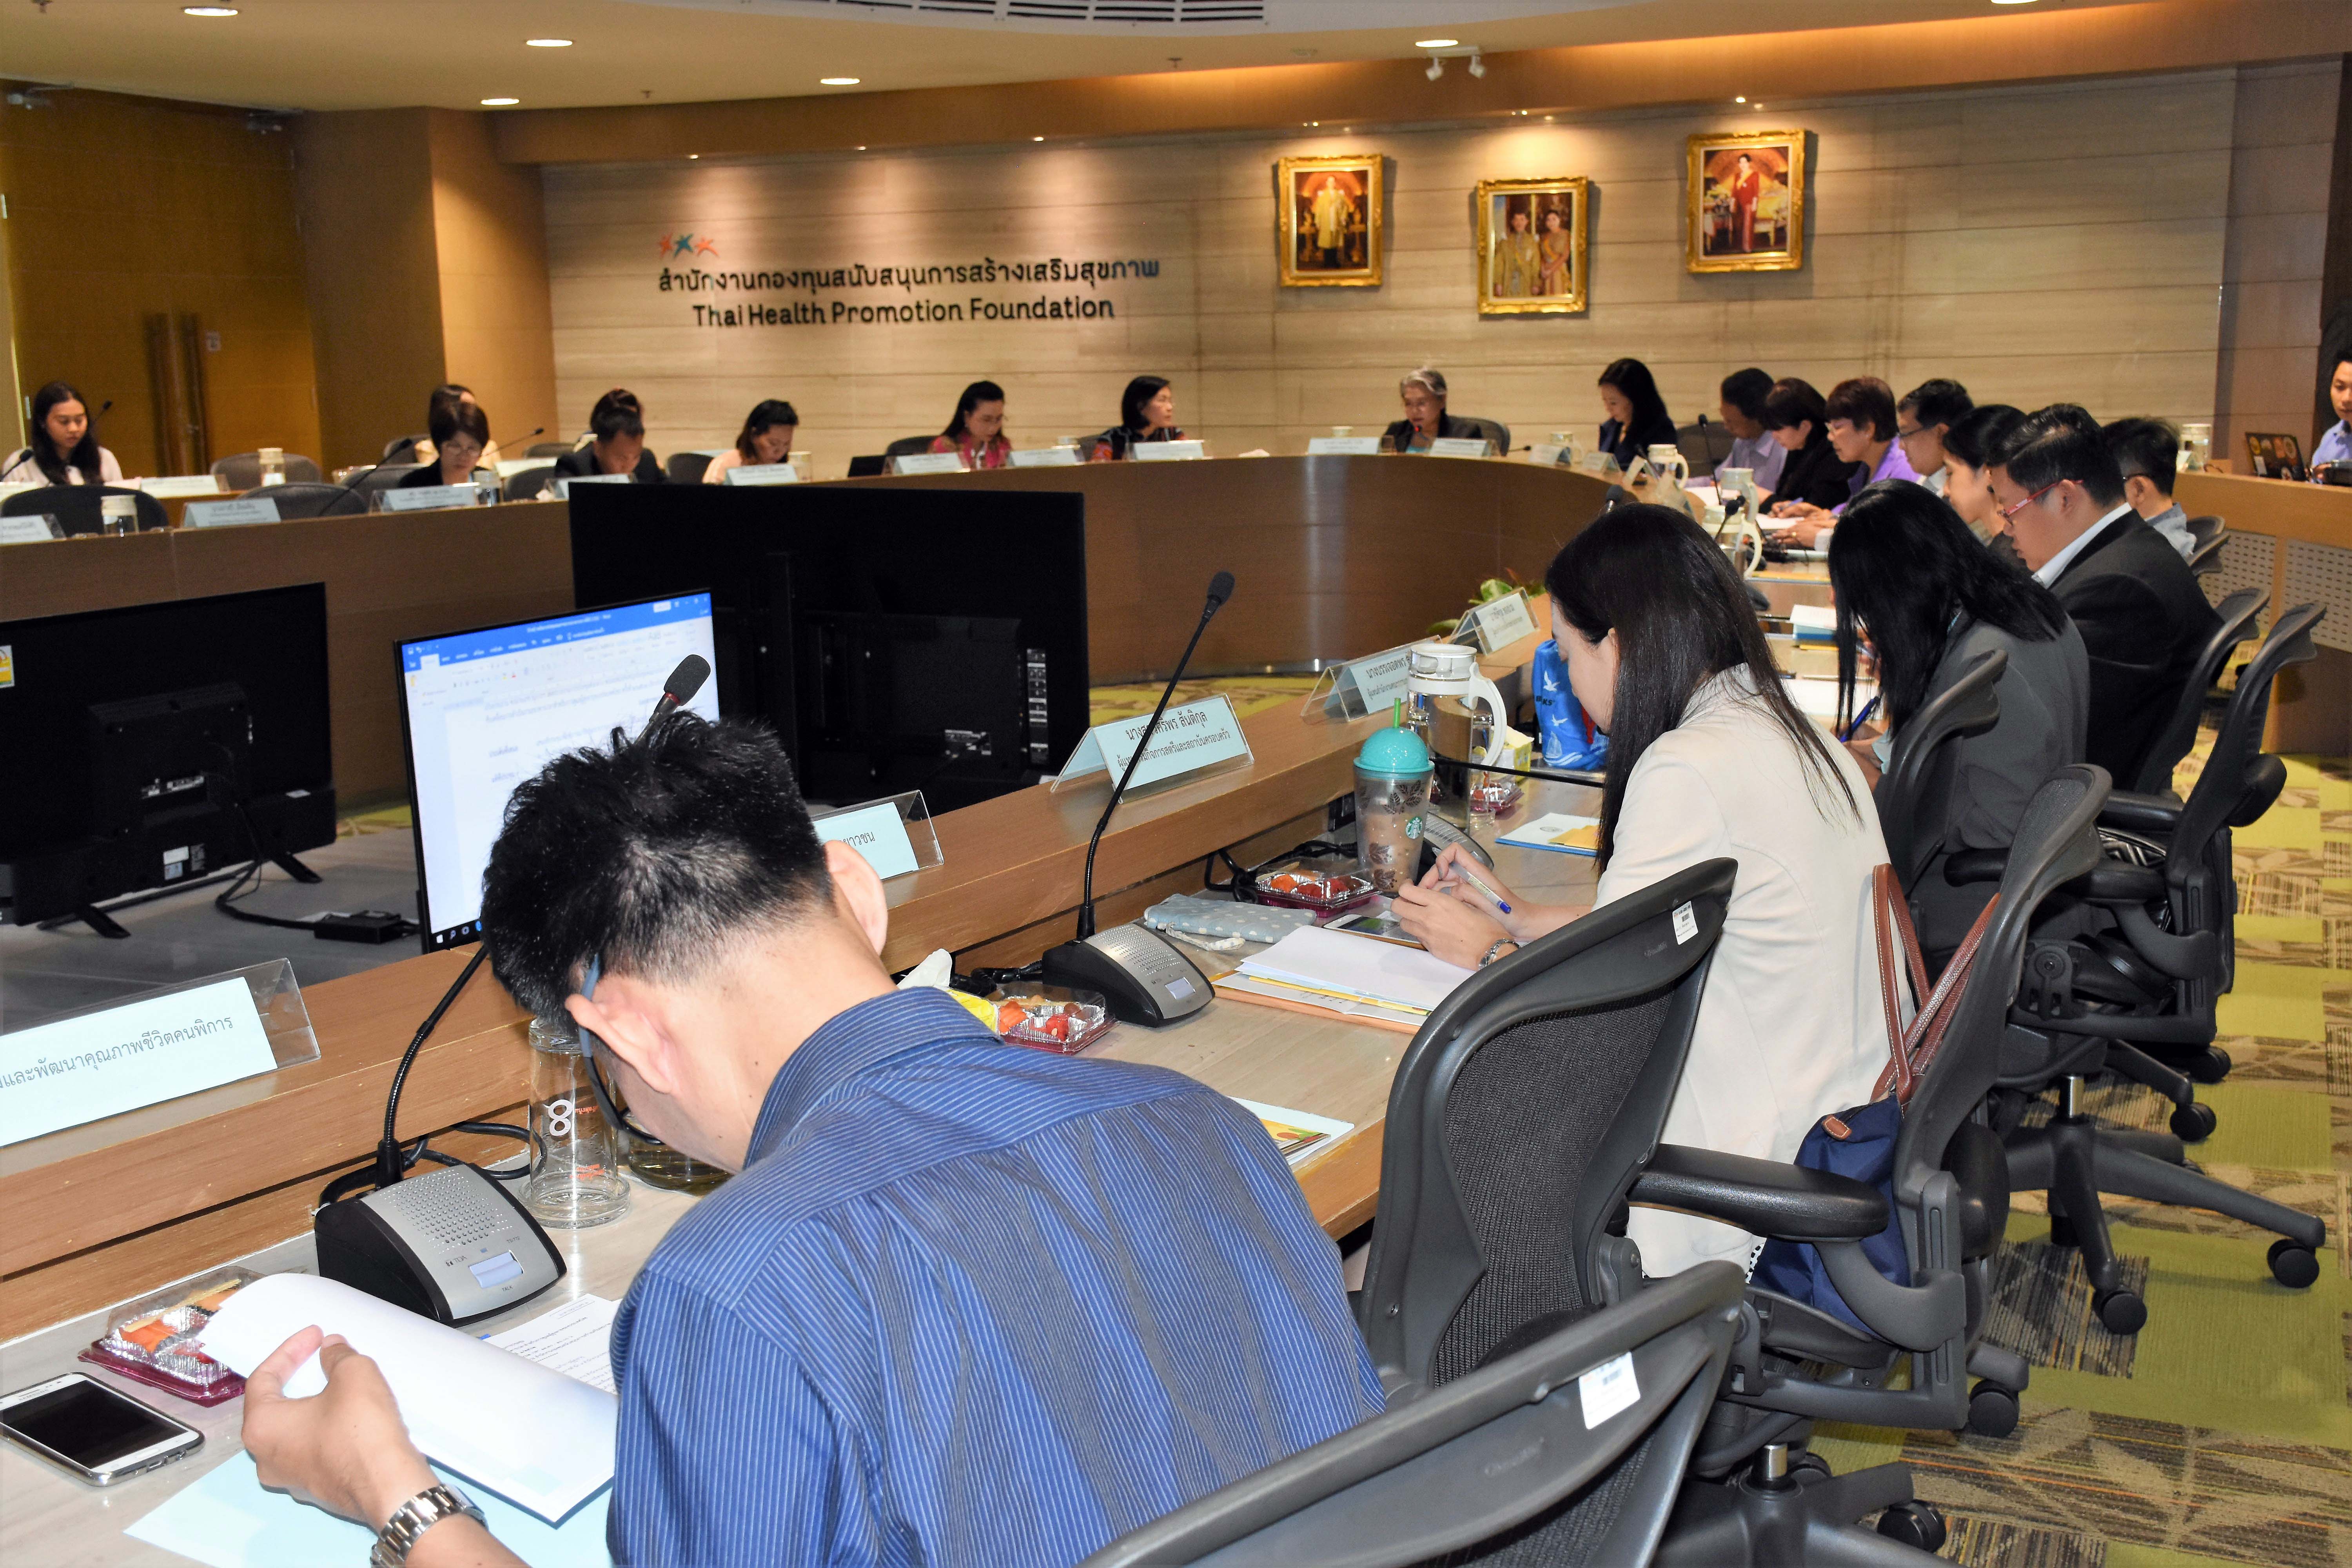 ประชุมคณะกรรมการขับเคลื่อนการดำเนินงานธนาคารเวลา สำหรับการดูแลผู้สูงอายุของประเทศไทย ครั้งที่ ๒/๒๕๖๒ 